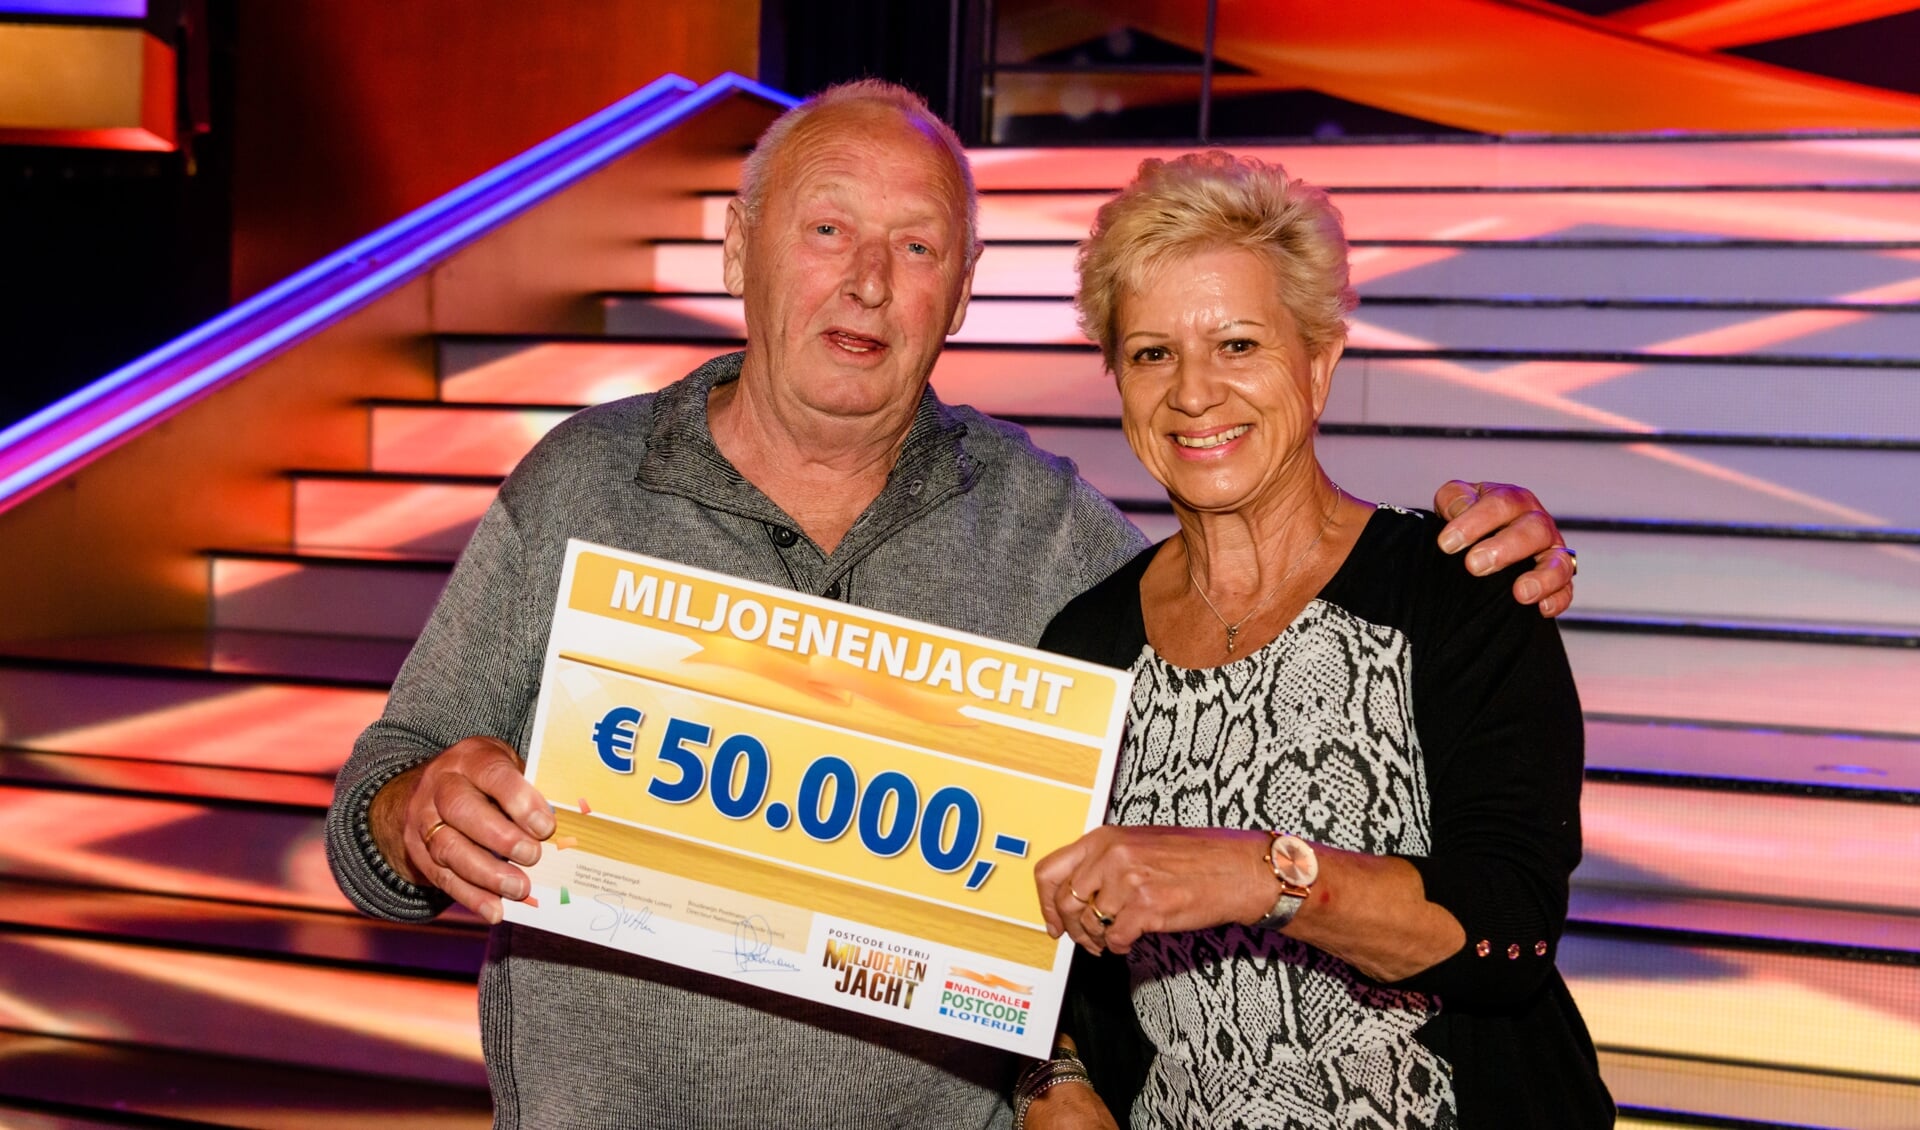 Roy samen met zijn vrouw én de cheque van 50.000 euro.